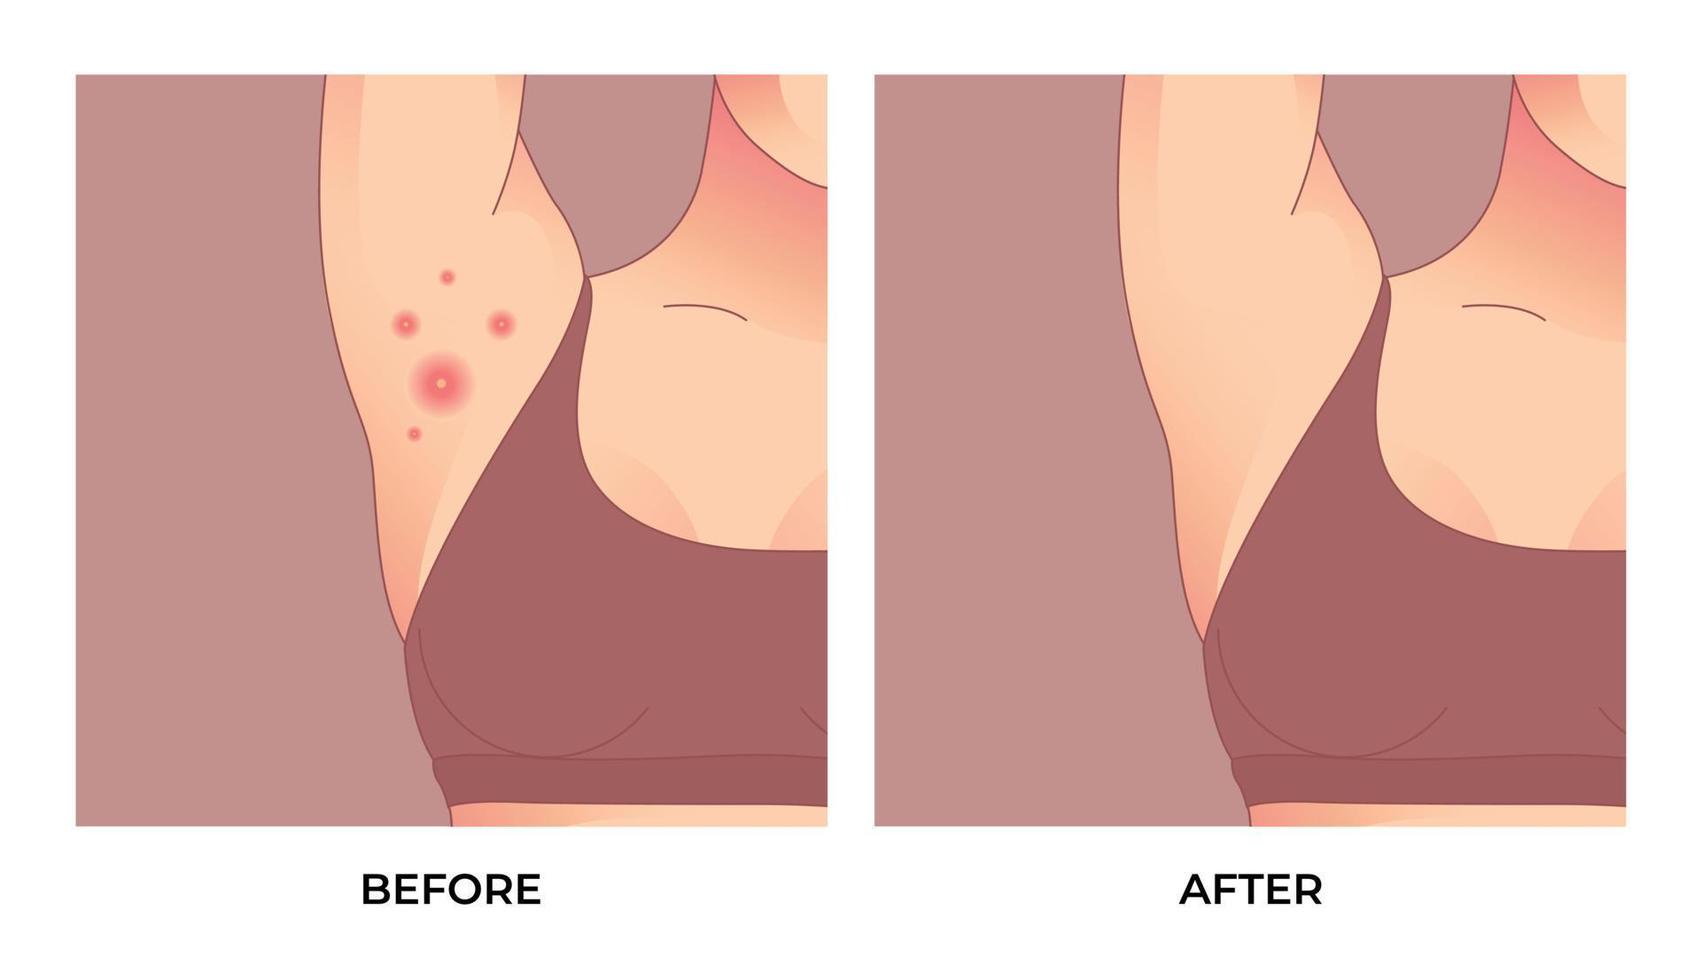 foliculite inflamatória, acne inversa, hidradenite supurativa na axila. tratamento de acne antes e depois. conceito de cuidados com a pele. vetor